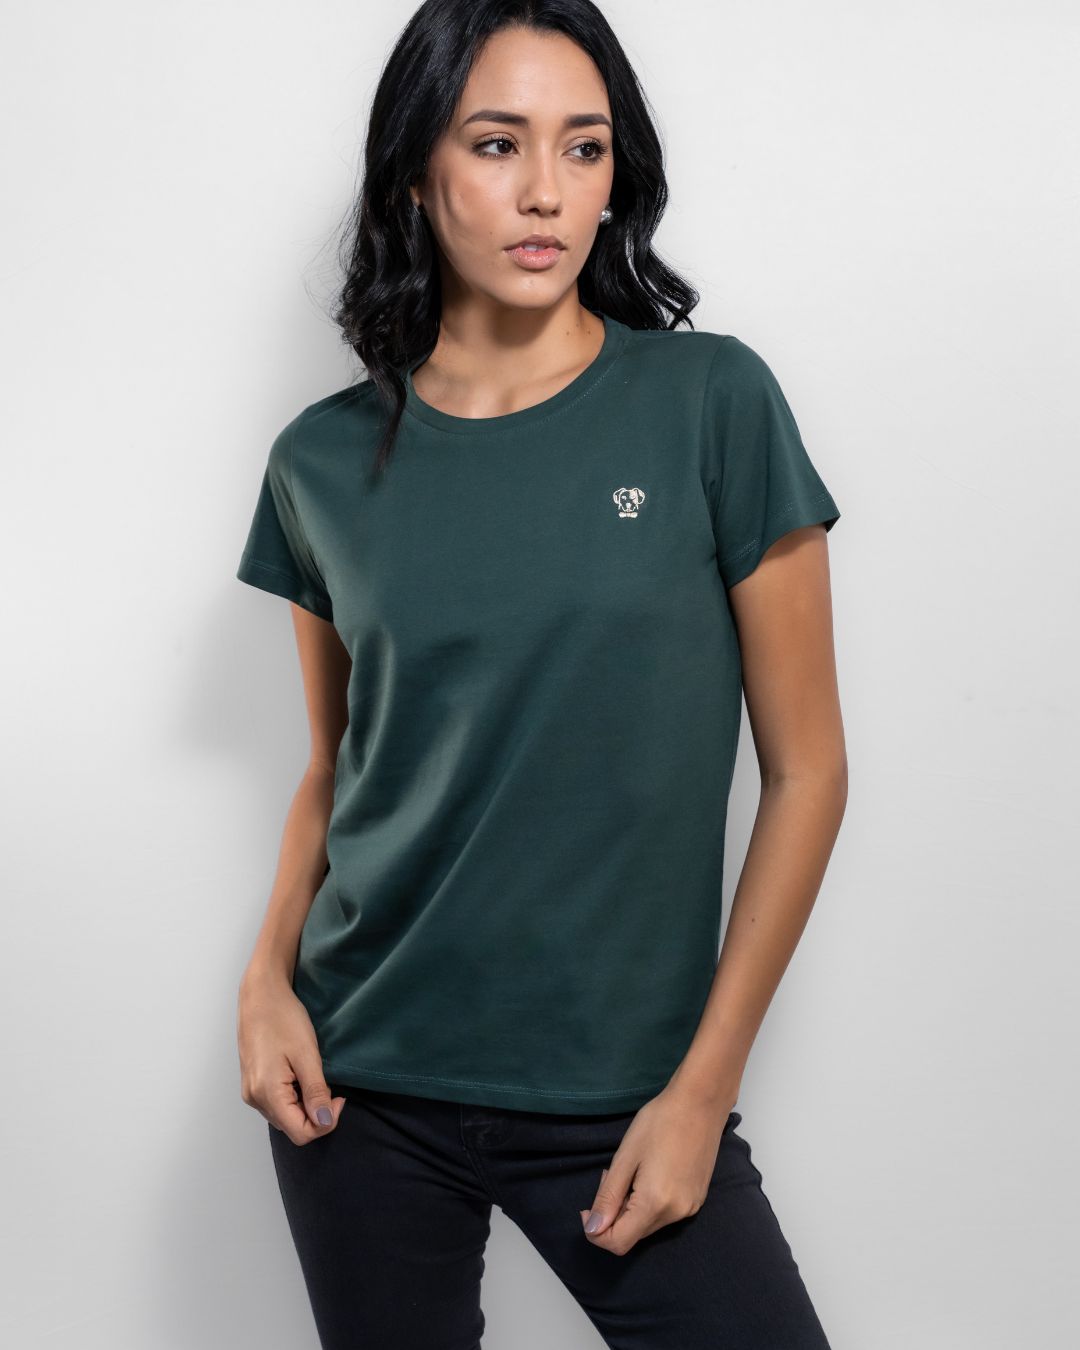 Camiseta Antimanchas de Mujer Verde Esmeralda